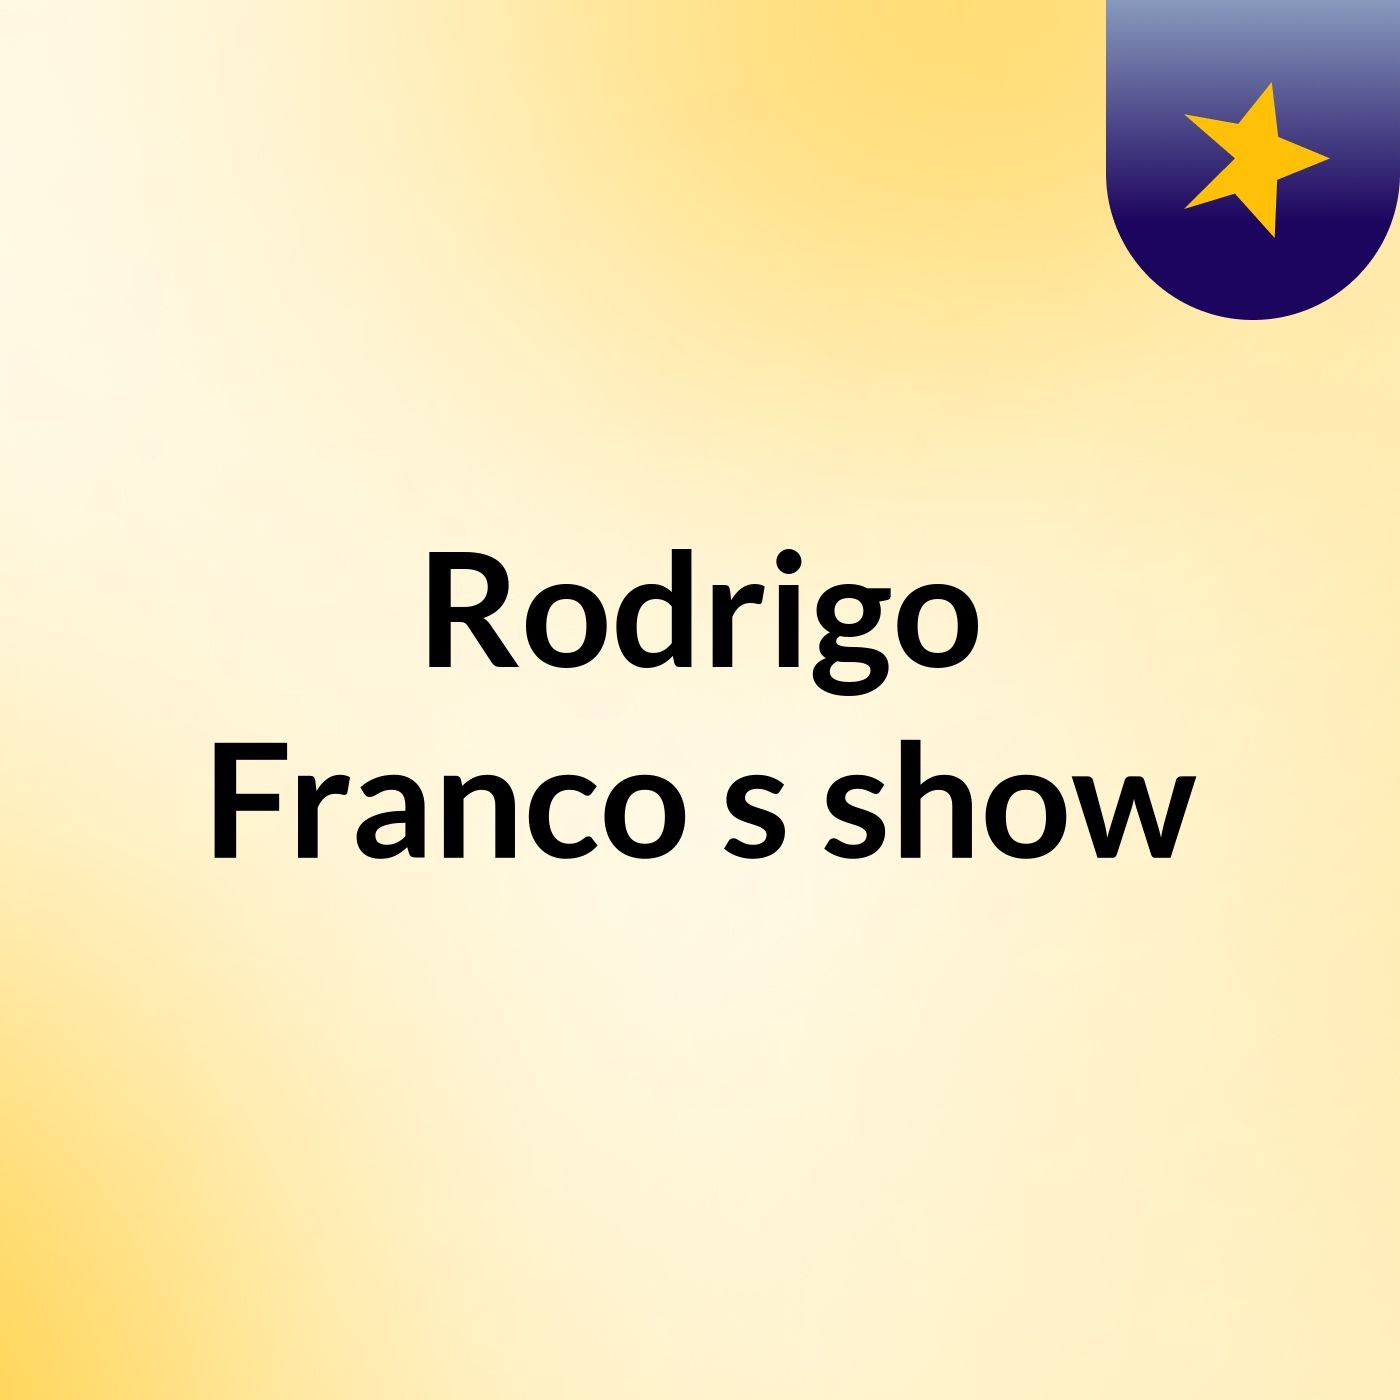 Rodrigo Franco's show